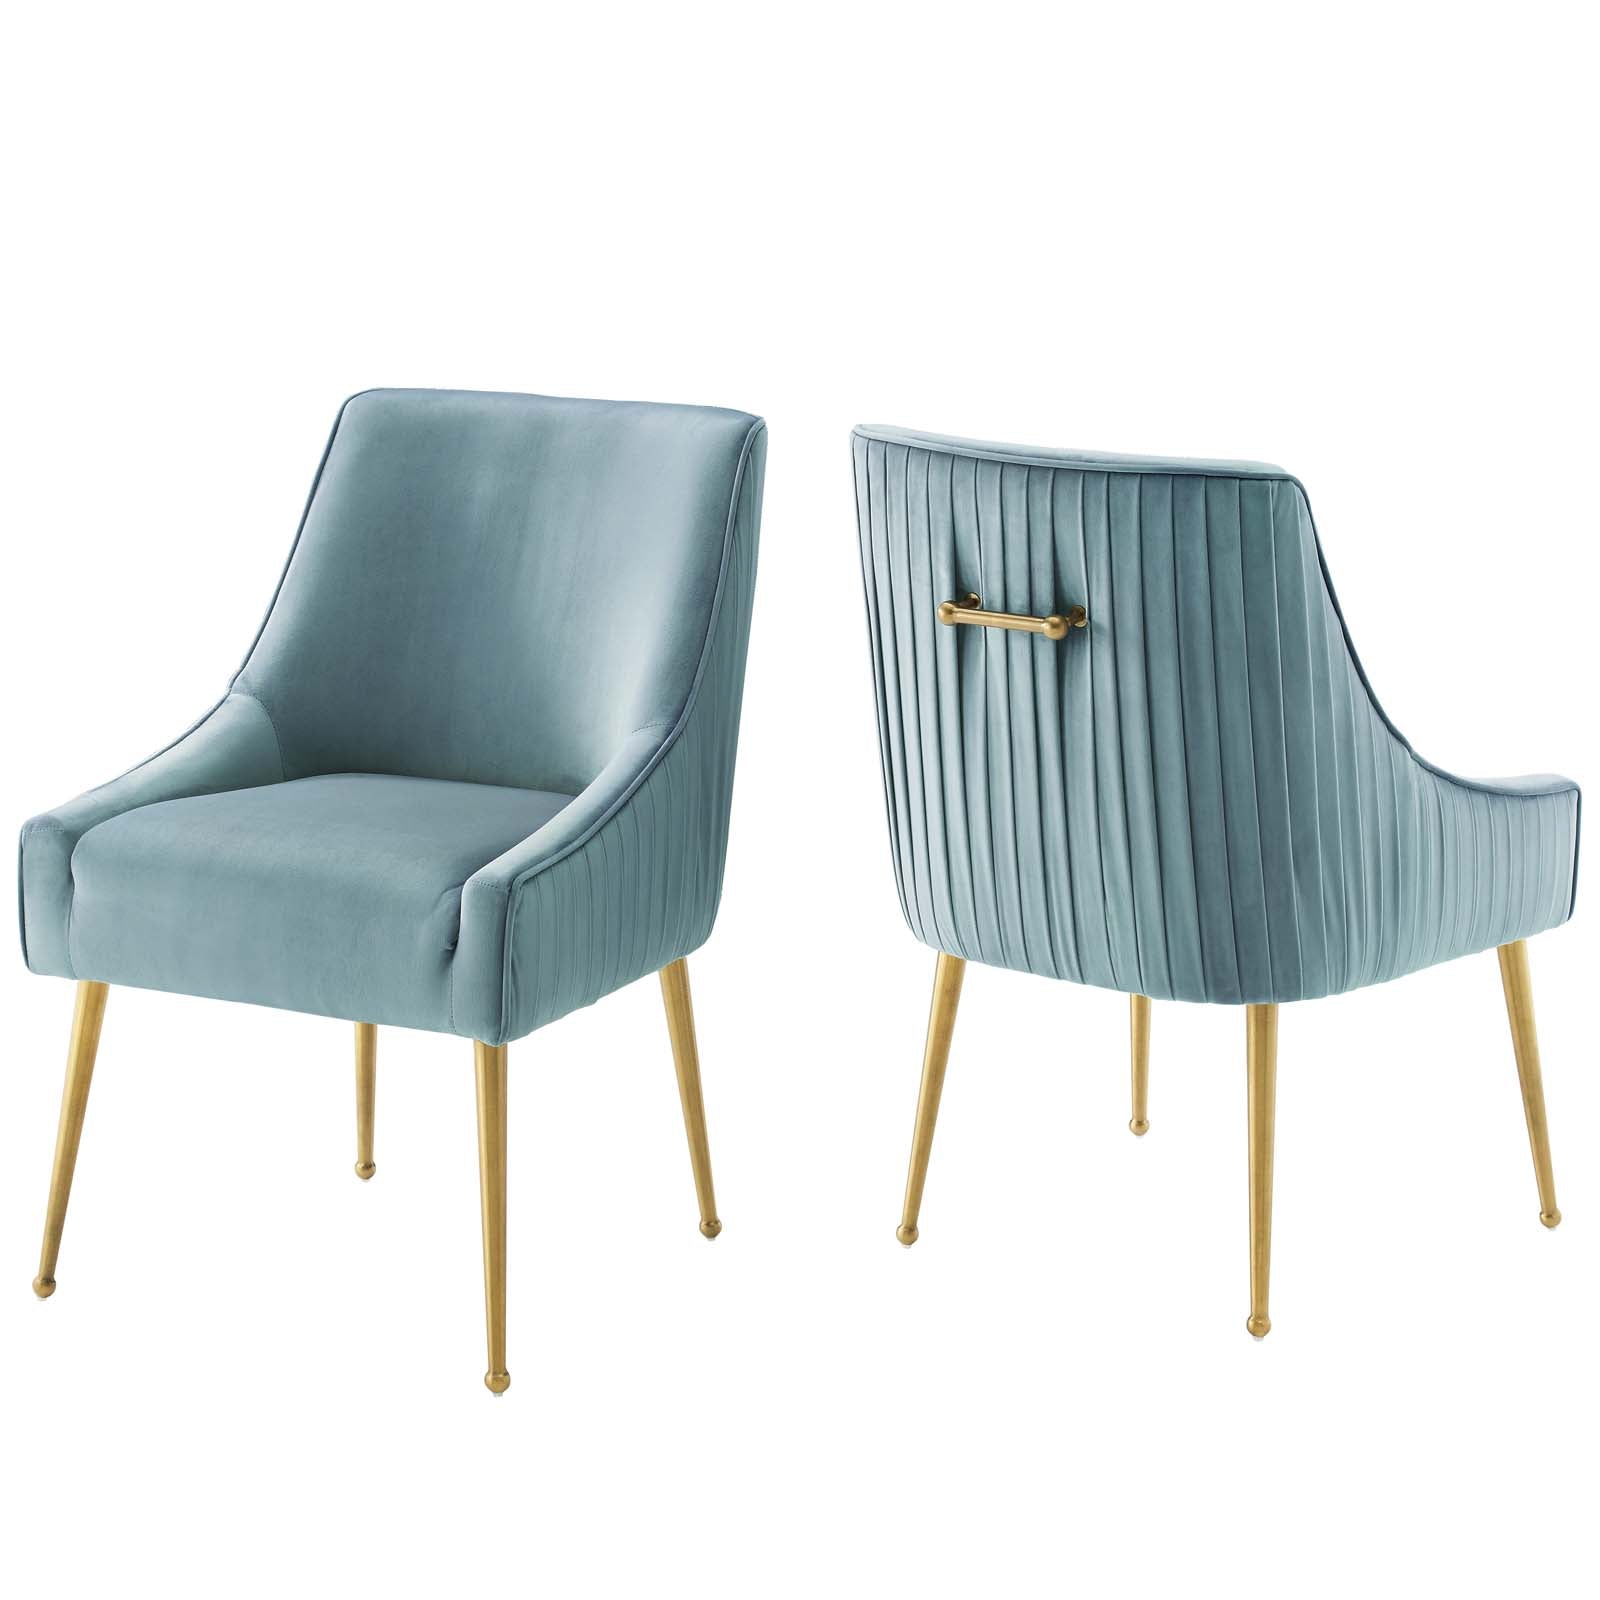 Discern Pleated Back Upholstered Performance Velvet Dining Chair Set of 2 - East Shore Modern Home Furnishings